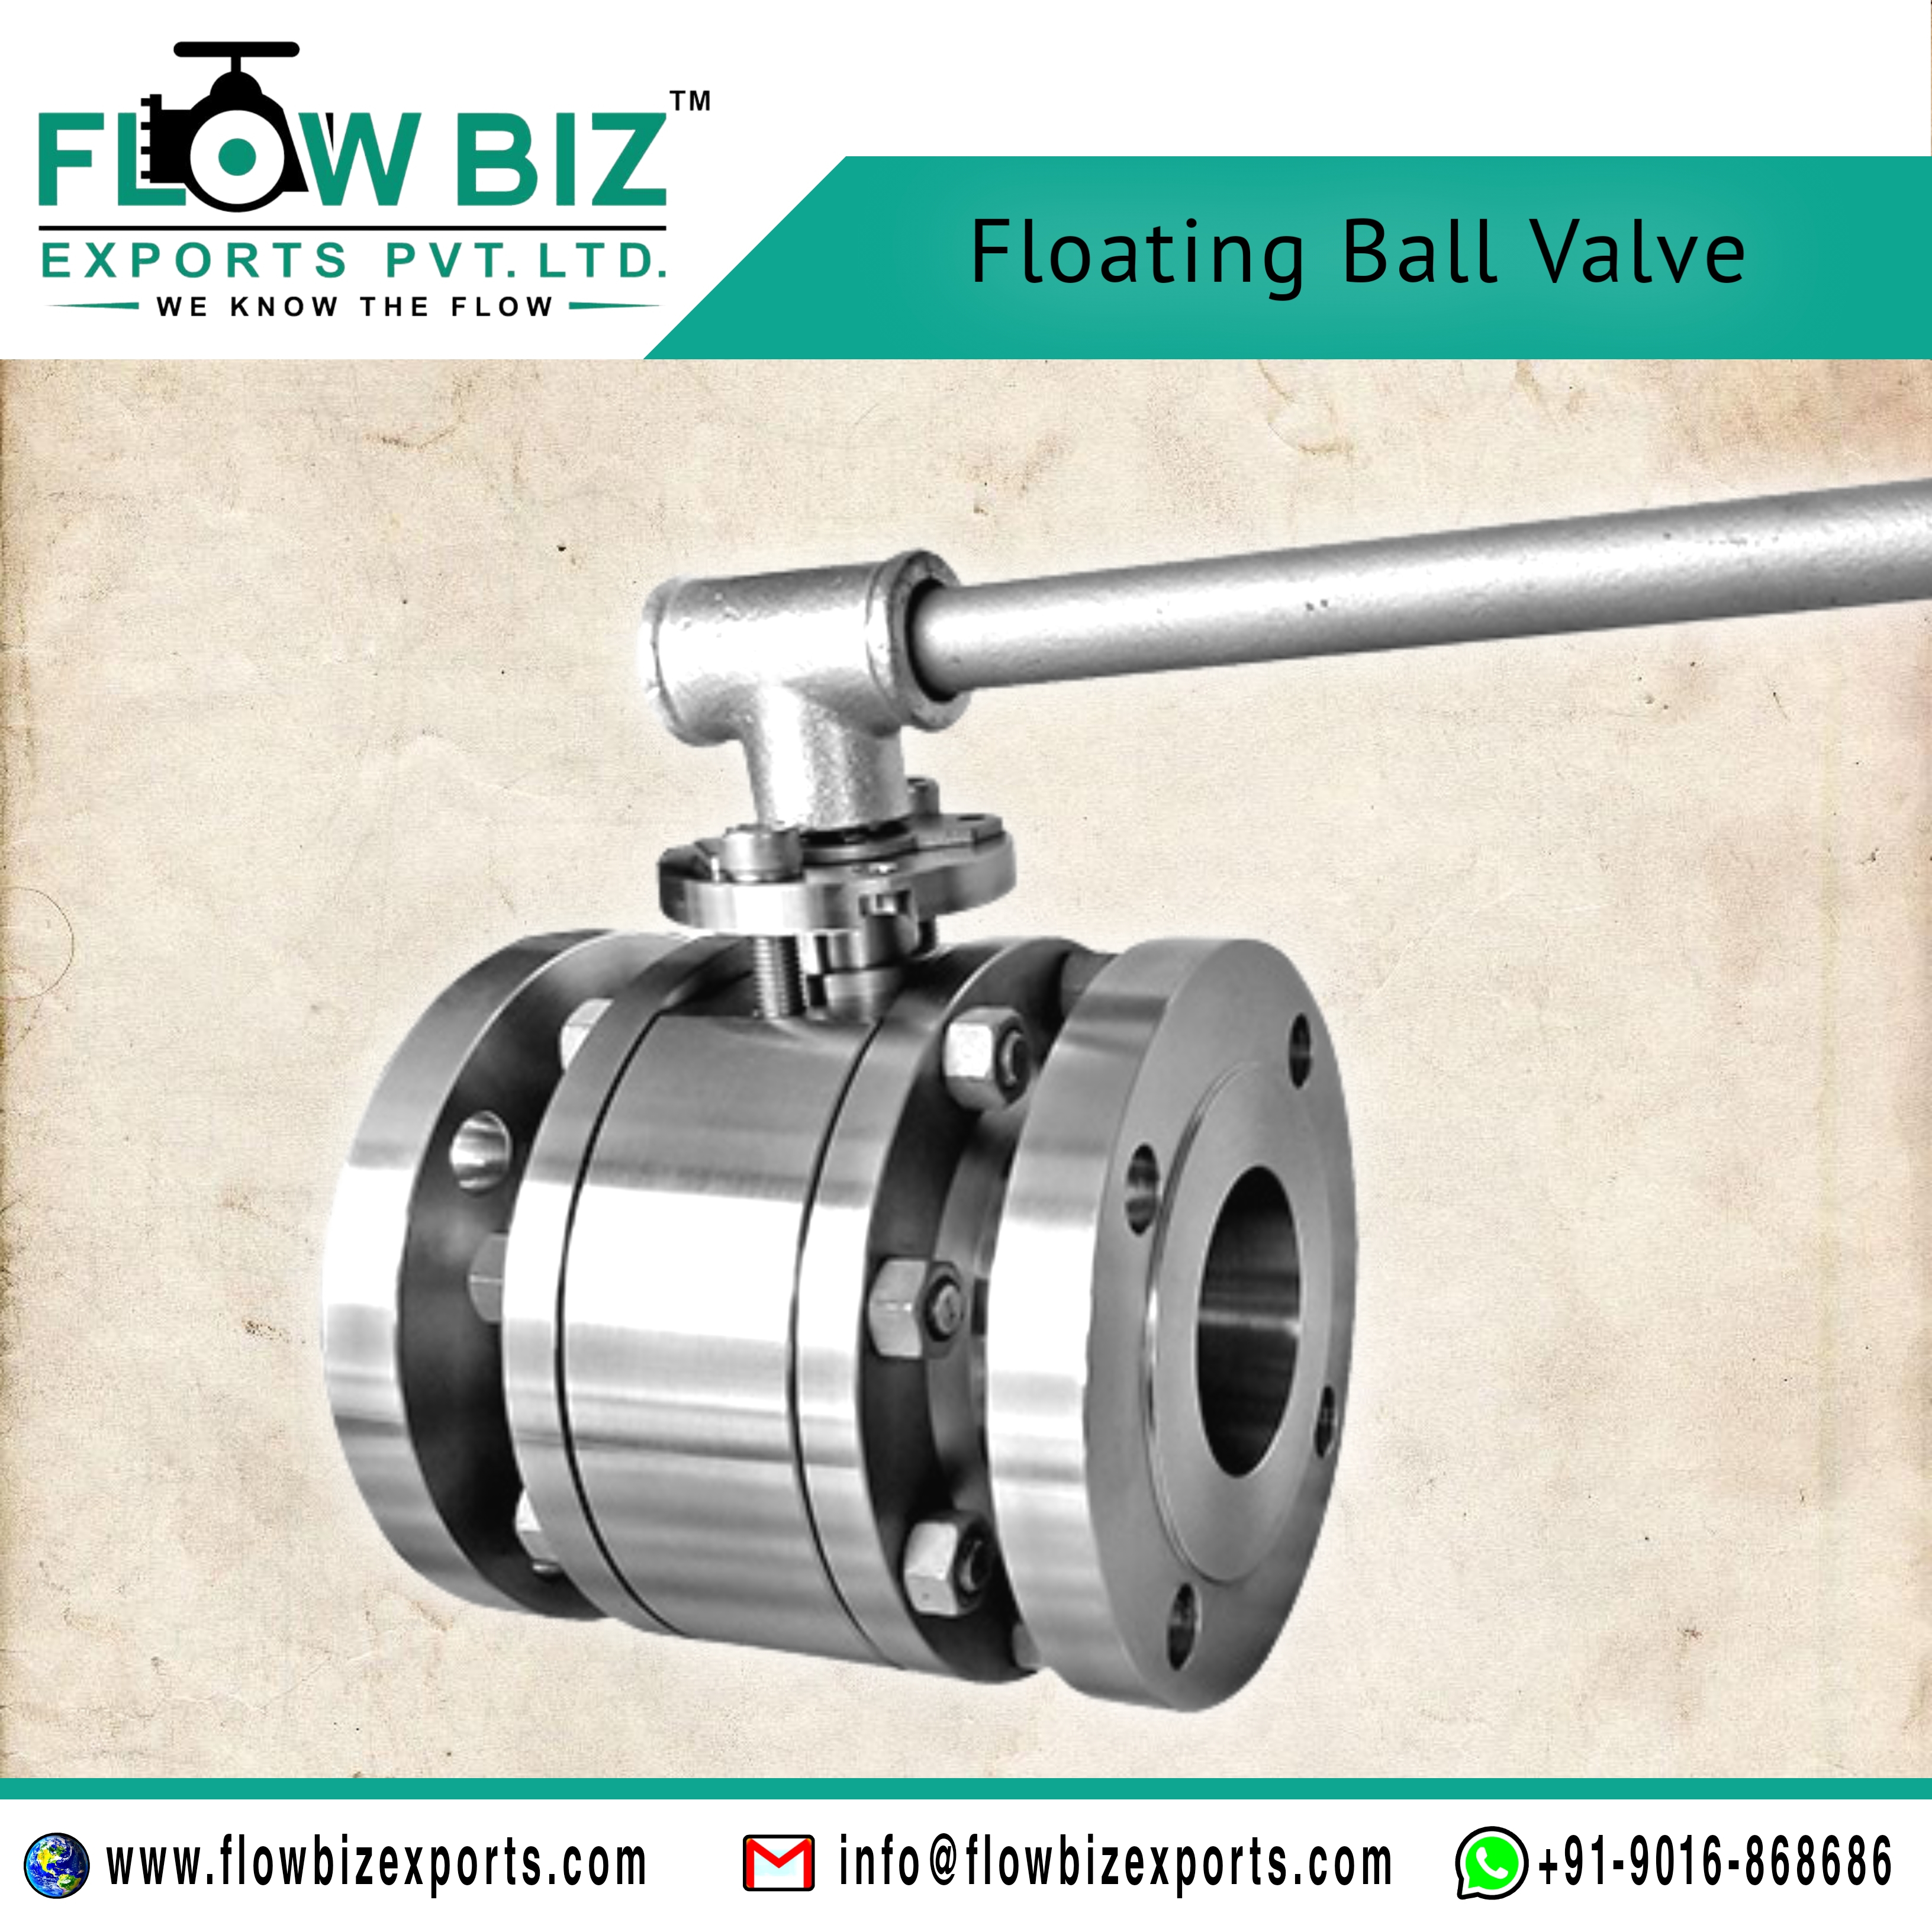 floating ball valve manufacturer india - Flowbiz